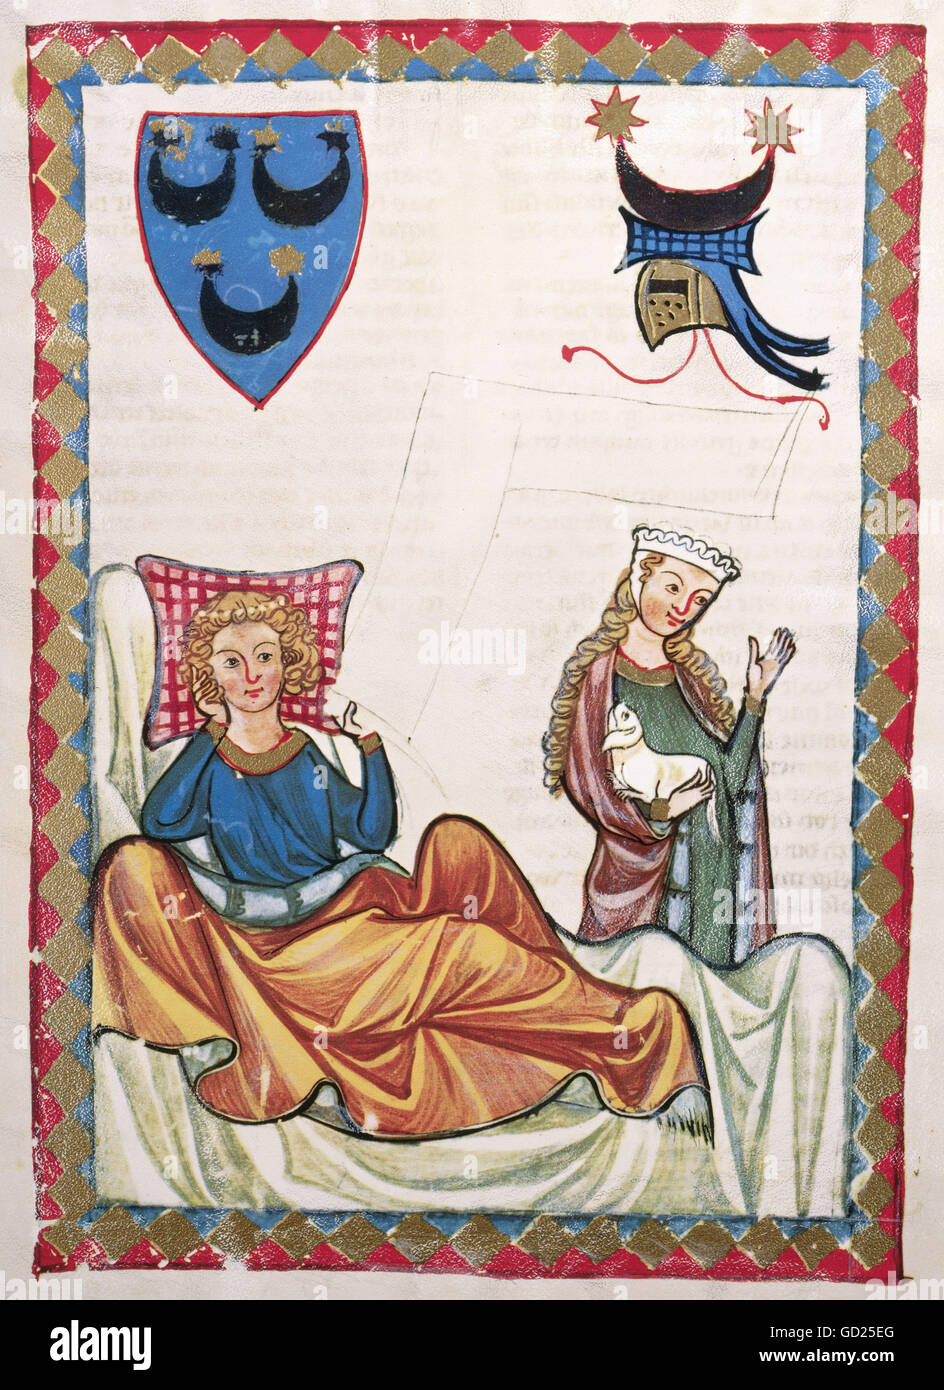 Beaux-arts, moyen age, gothique, illumination, le Codex Manesse, Zurich, 1305 - 1340, Heinrich von Morungen ( + um 1220), couvrant la couleur sur vélin, Université de Heidelberg, bibliothèque de l'artiste , Copyright n'a pas à être effacée Banque D'Images